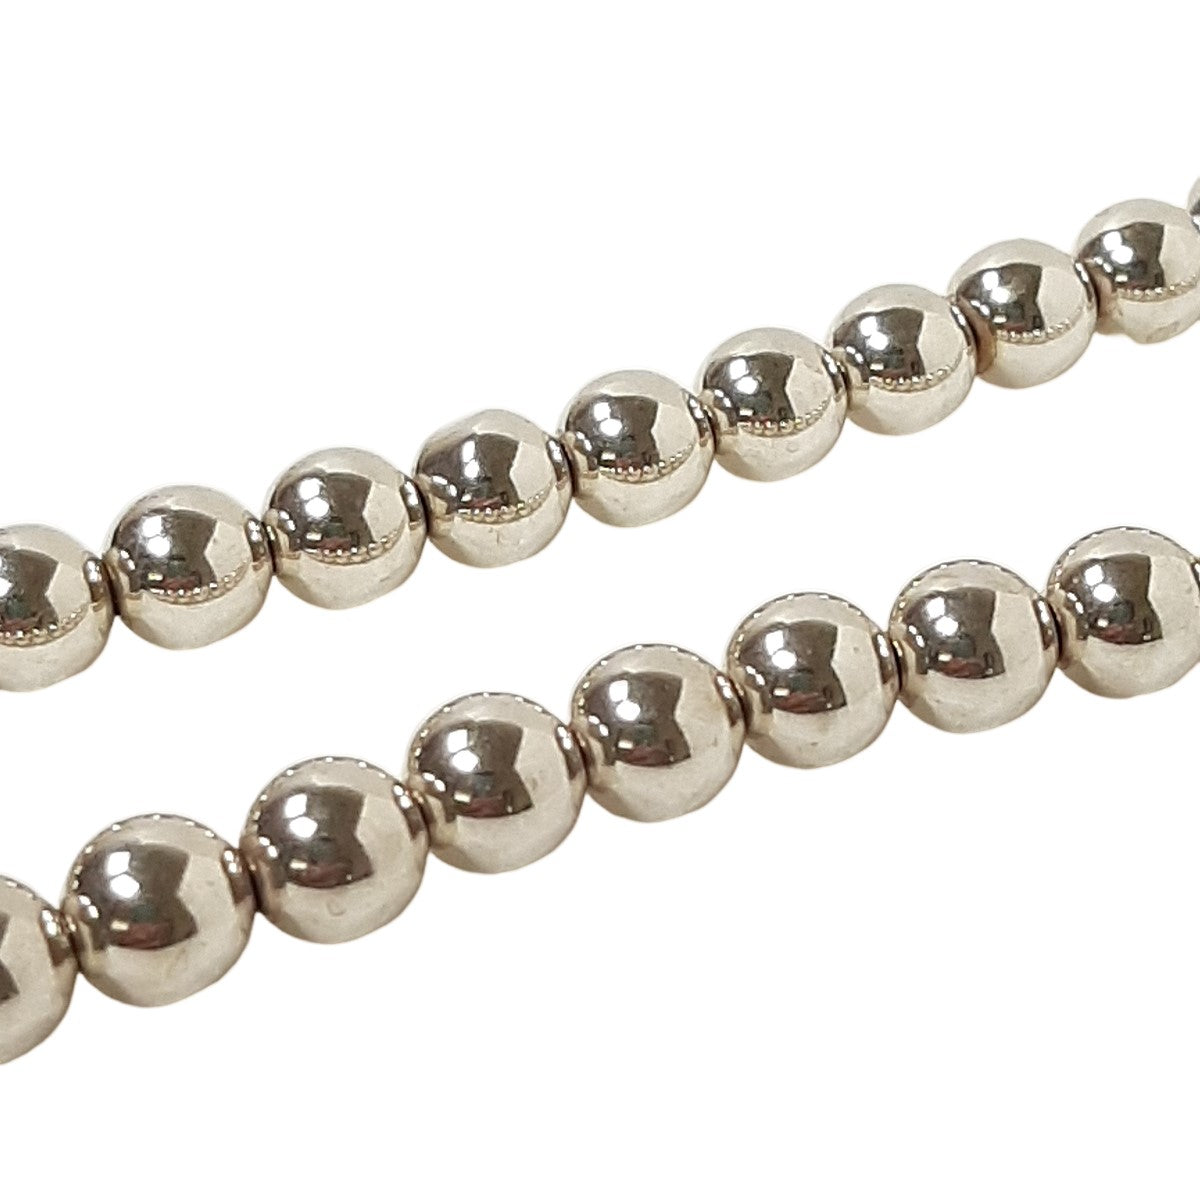 ヴィンテージ シルバー925 シルバービーズ ネックレス 31g / Vintage Sterling Silver Beaded Necklace